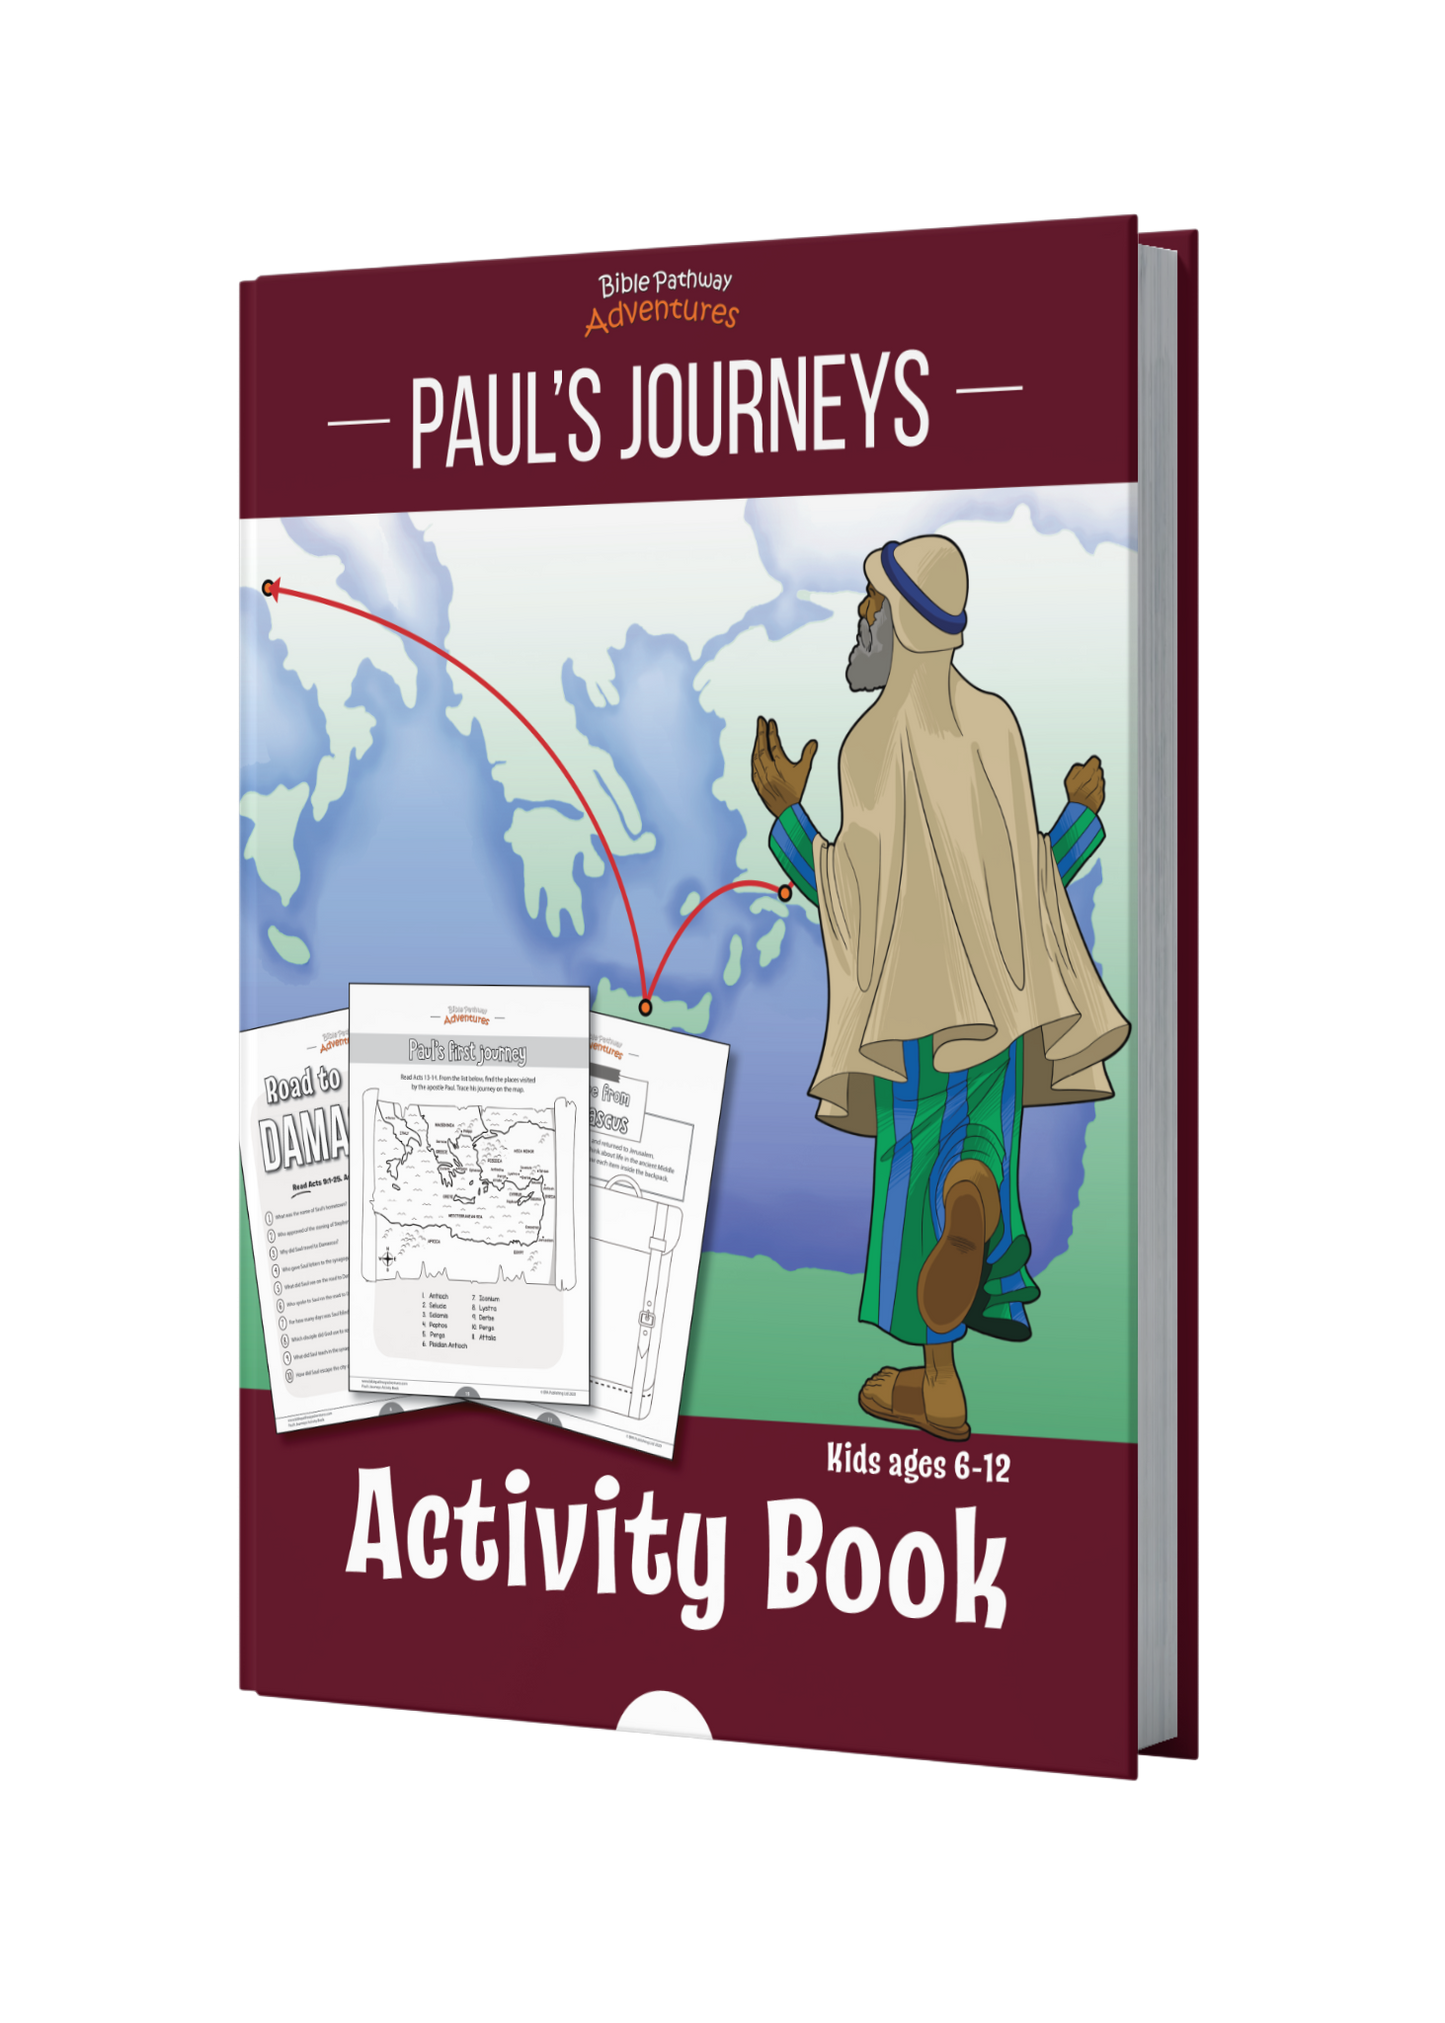 Paul's Journeys Activity Book